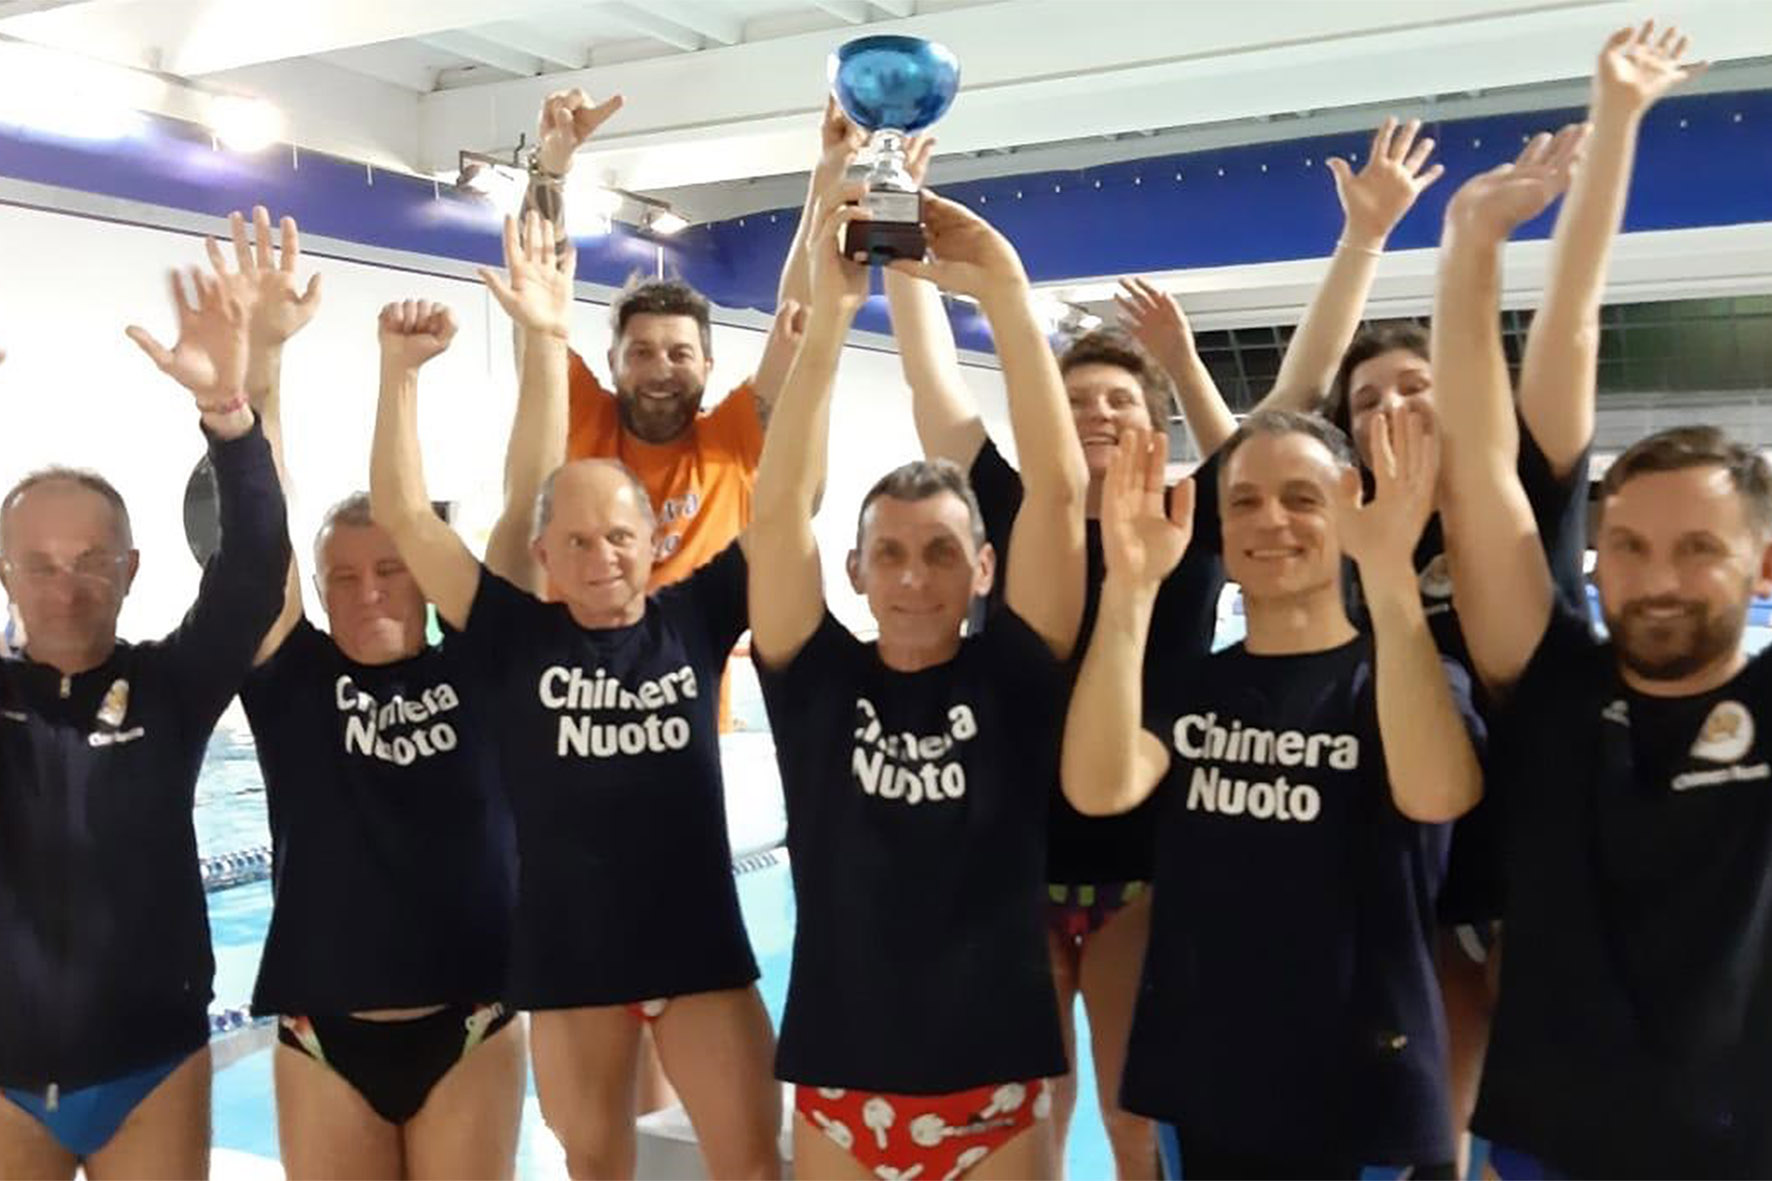 La Chimera Nuoto è terza ai Campionati Toscani Master